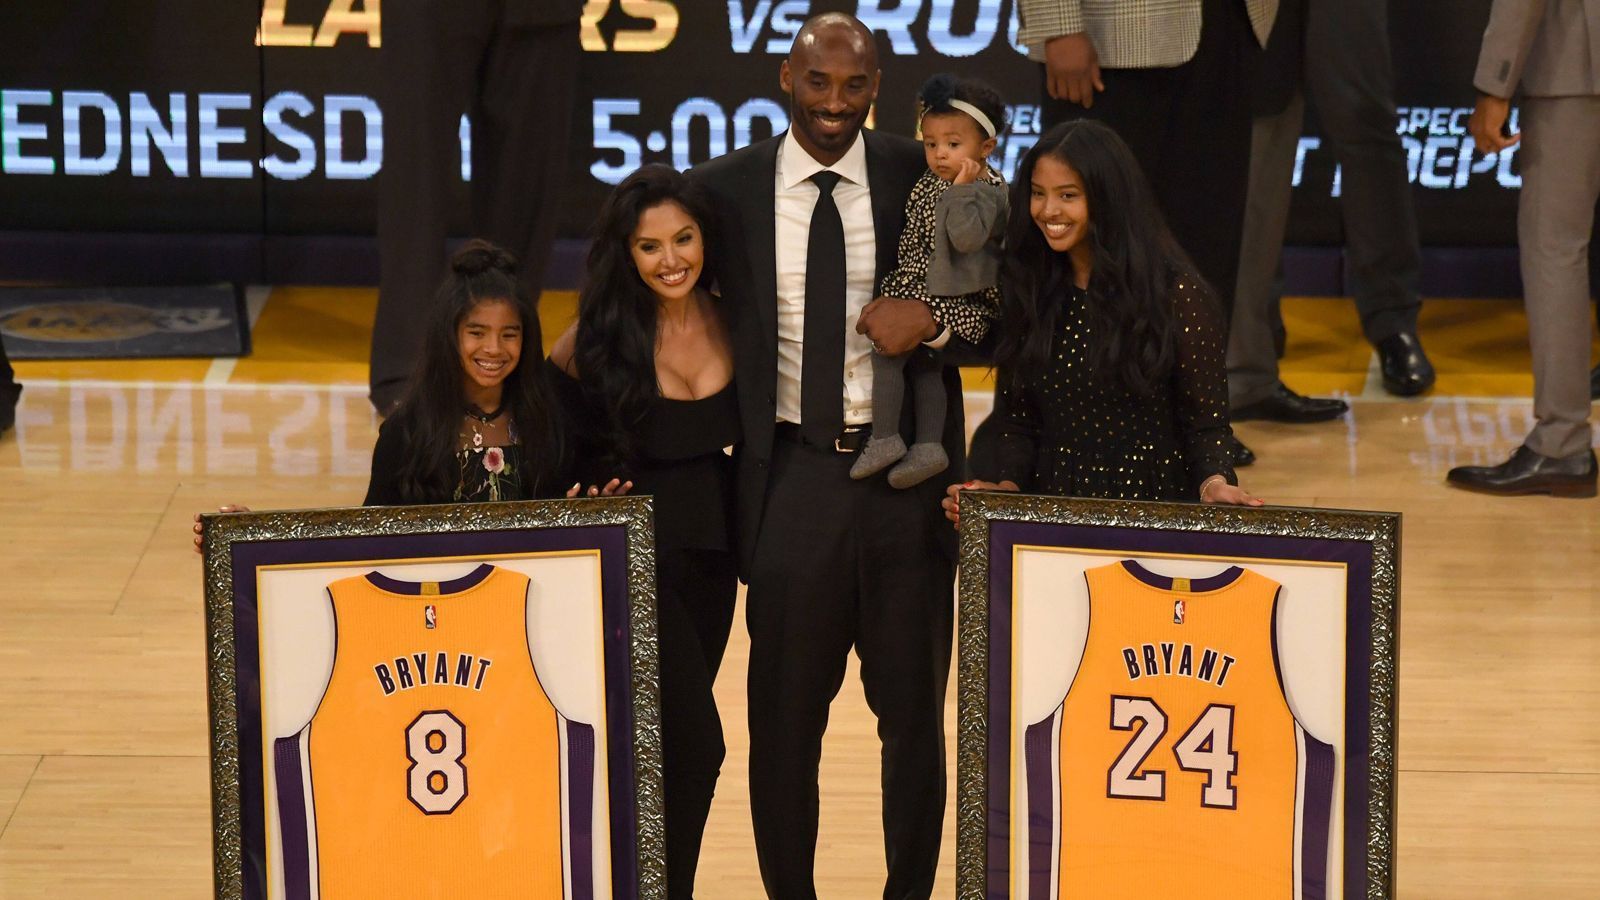 
                <strong>Nummer 8 und 24 bei den Lakers nicht mehr vergeben</strong><br>
                Ihm zu Ehren werden die Rückennumern 8 und 24 bei den L.A. Lakers nicht mehr vergeben. Mit seiner Frau Vanessa und seinen damals noch drei Töchtern nahm er die Ehrung entgegen. Links im Bild, die mit ihm verunglückte Tochter Gianna.
              